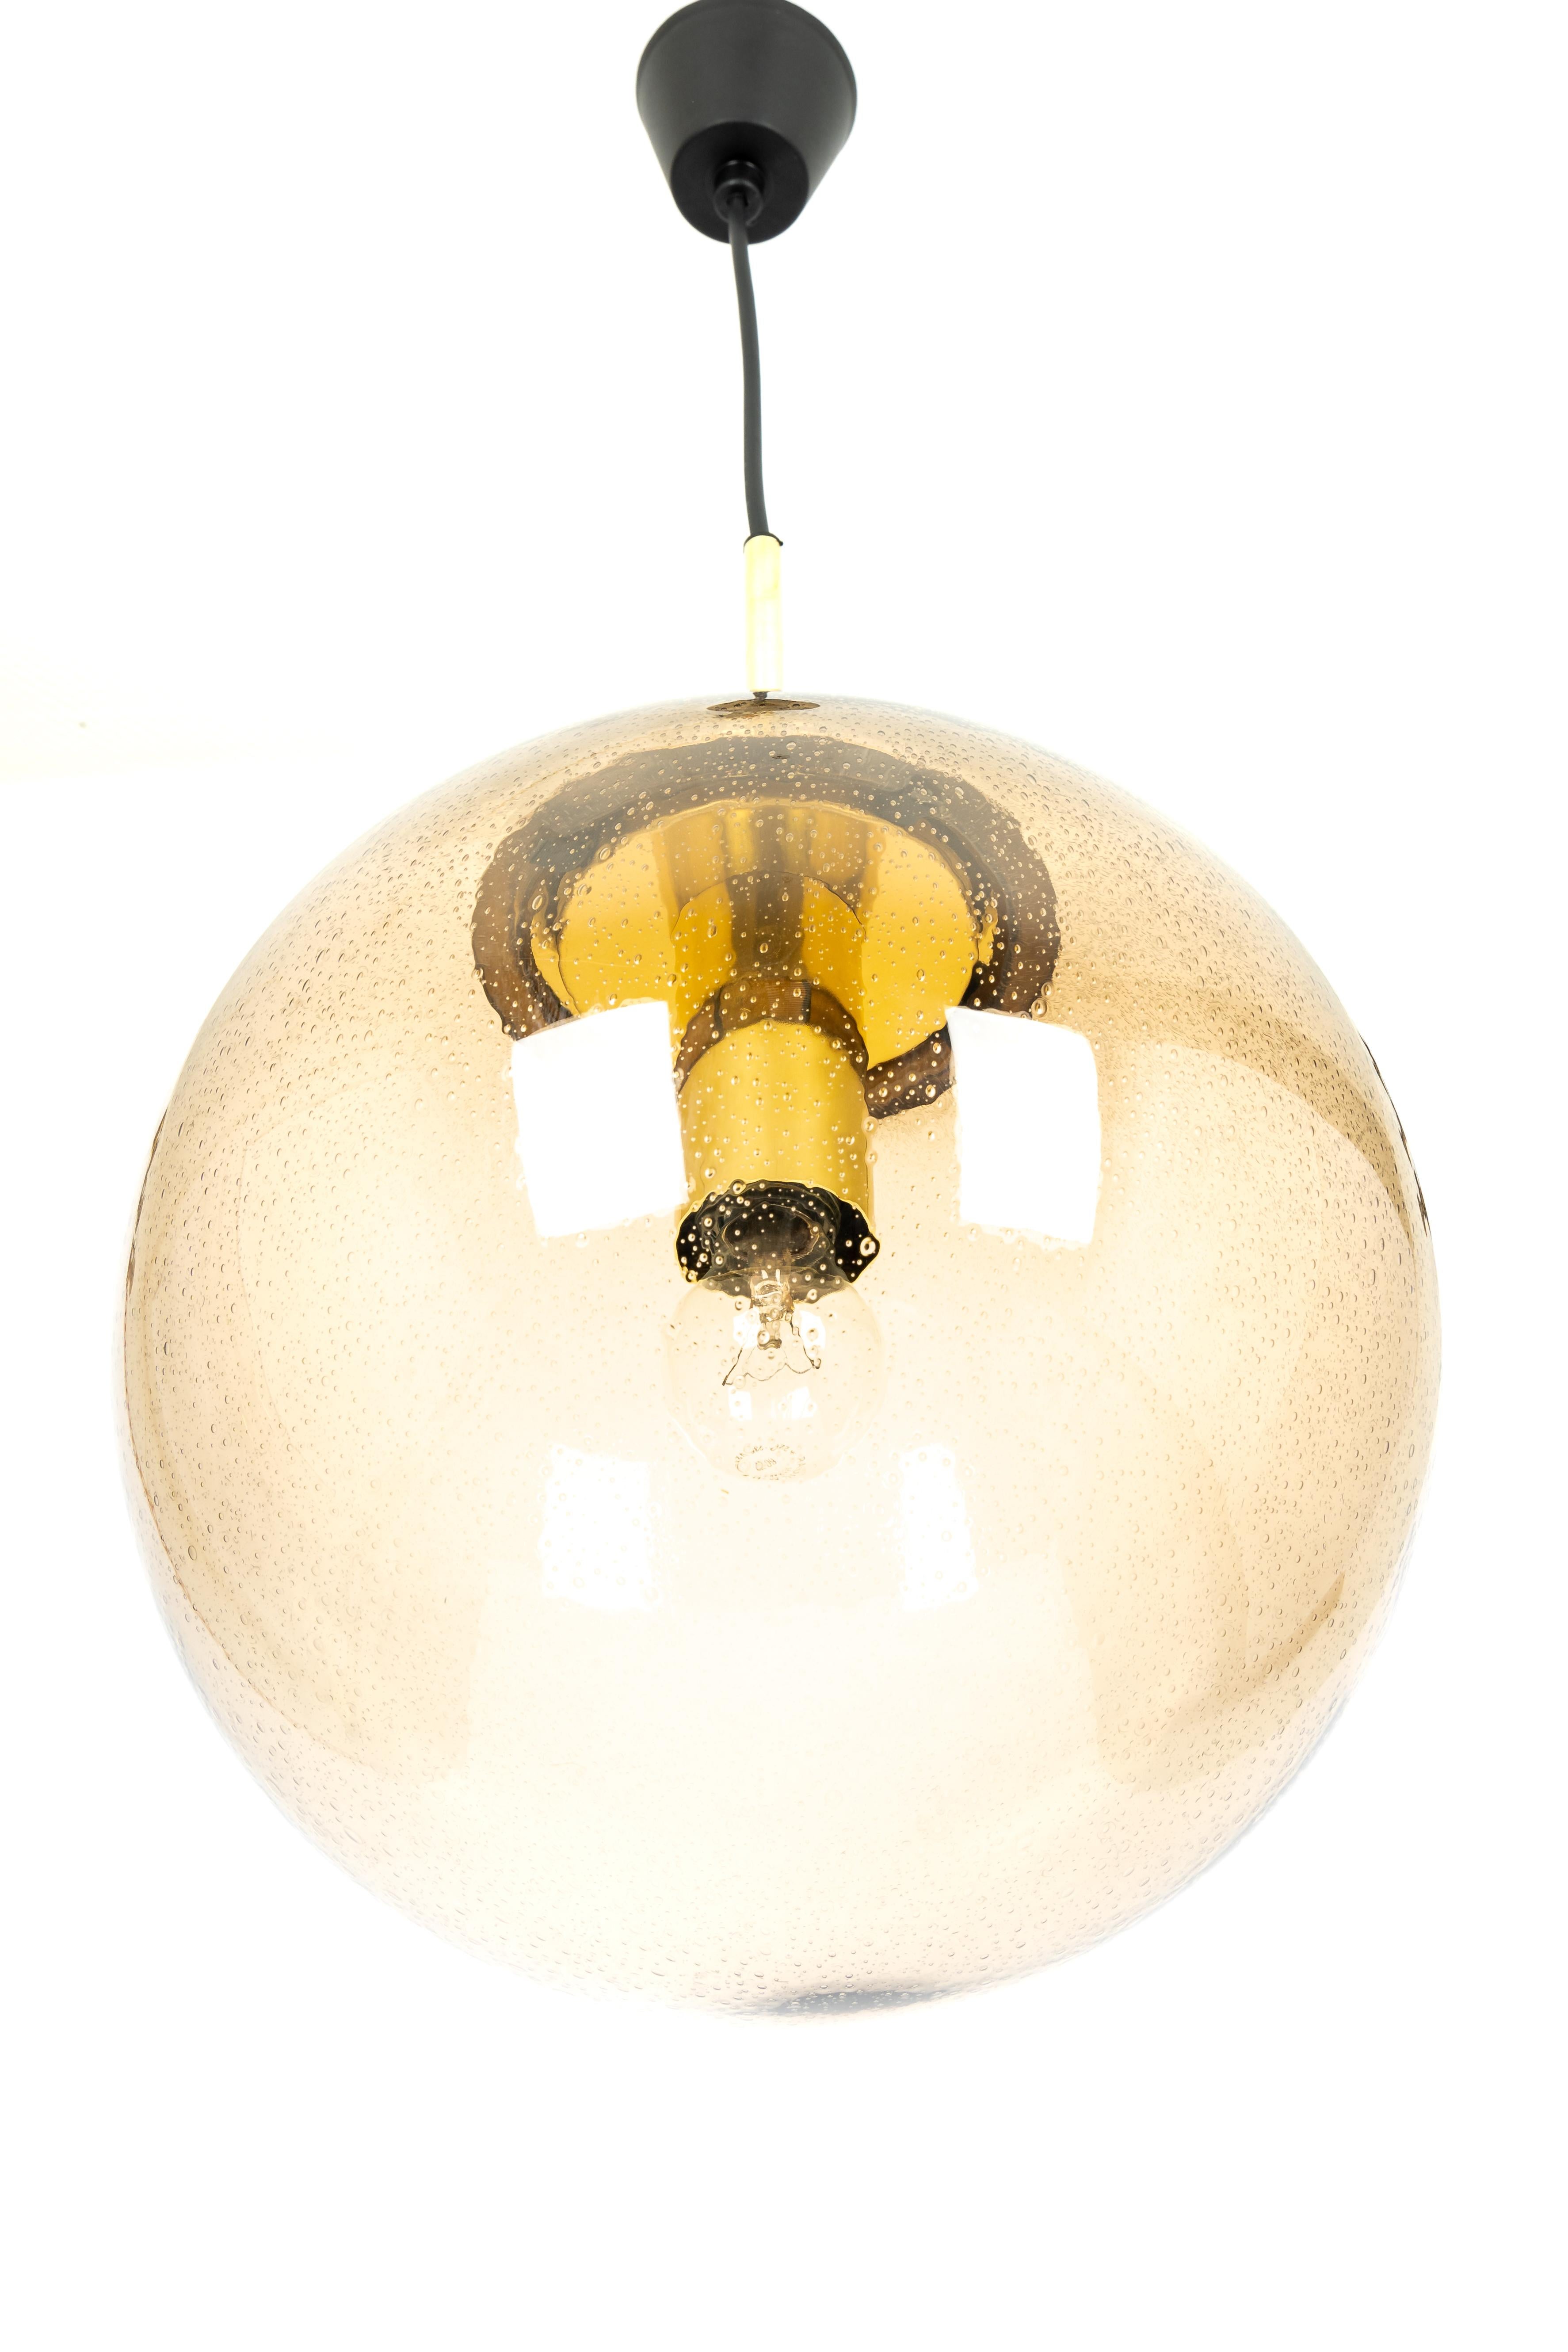 1 de 2 Grandes boules pendantes en verre fumé, fabriquées par Limburg, Allemagne, vers 1970-1979.

Douilles : Une ampoule standard E27 
Les ampoules ne sont pas incluses. Il est possible d'installer ce luminaire dans tous les pays (États-Unis,